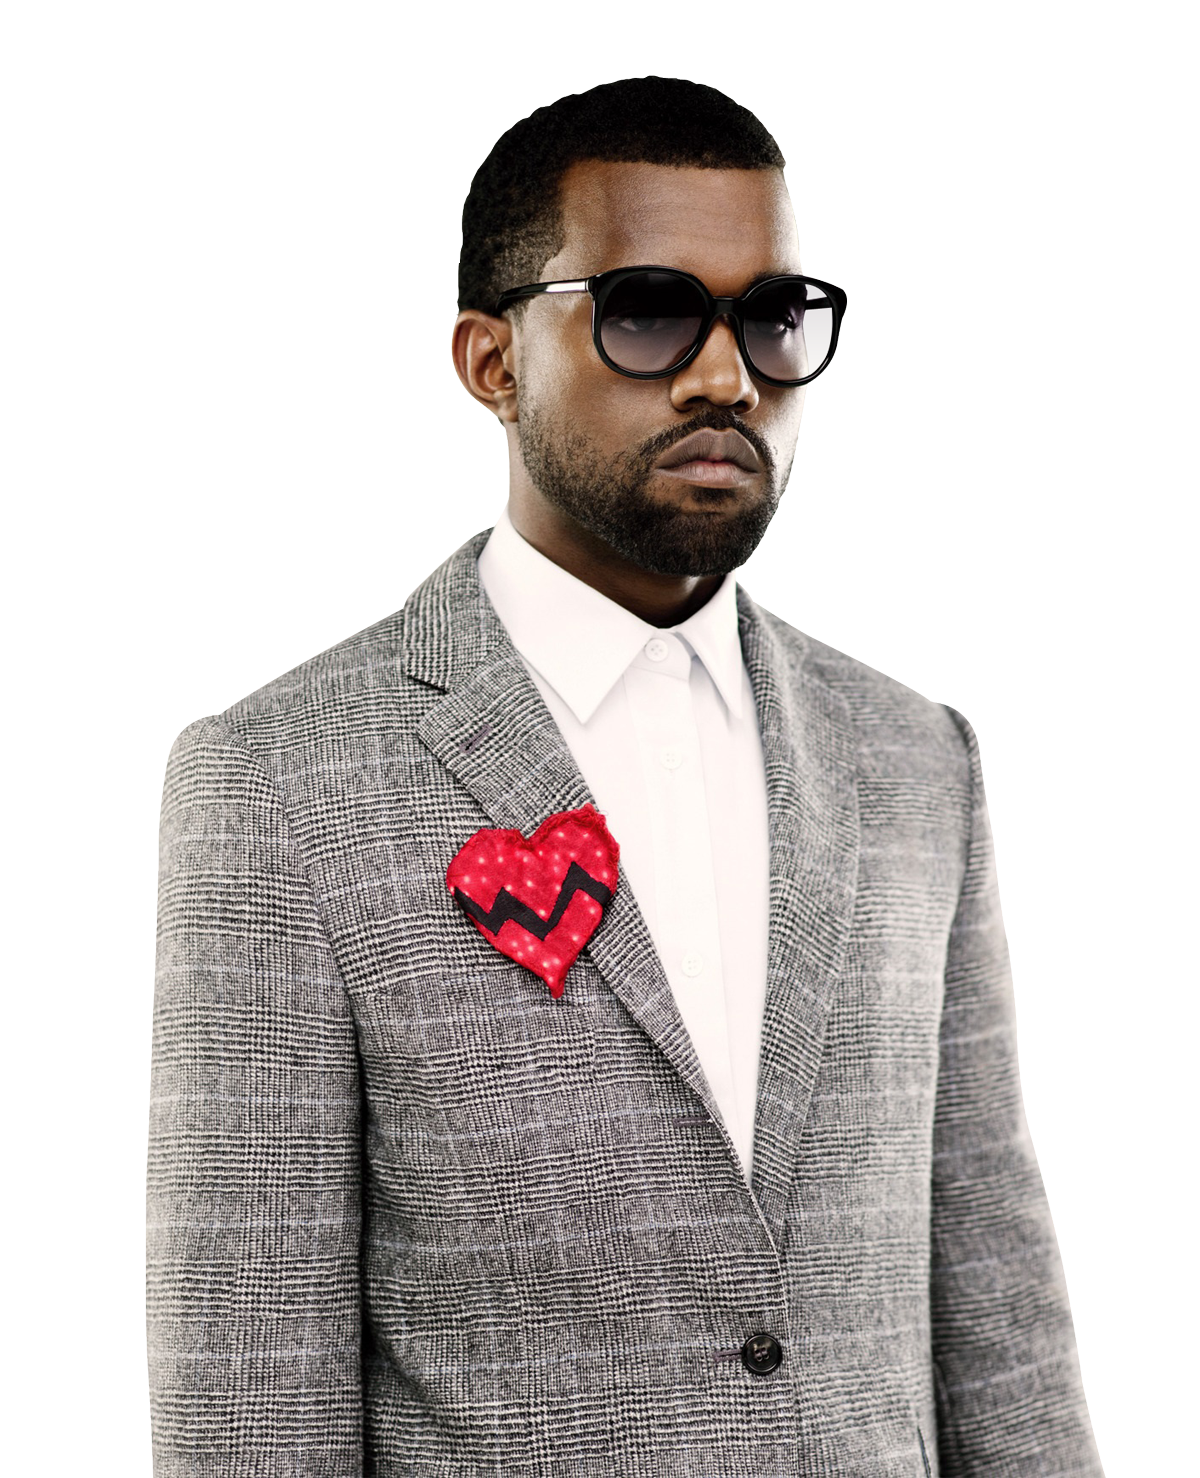 Kanye West PNG Image